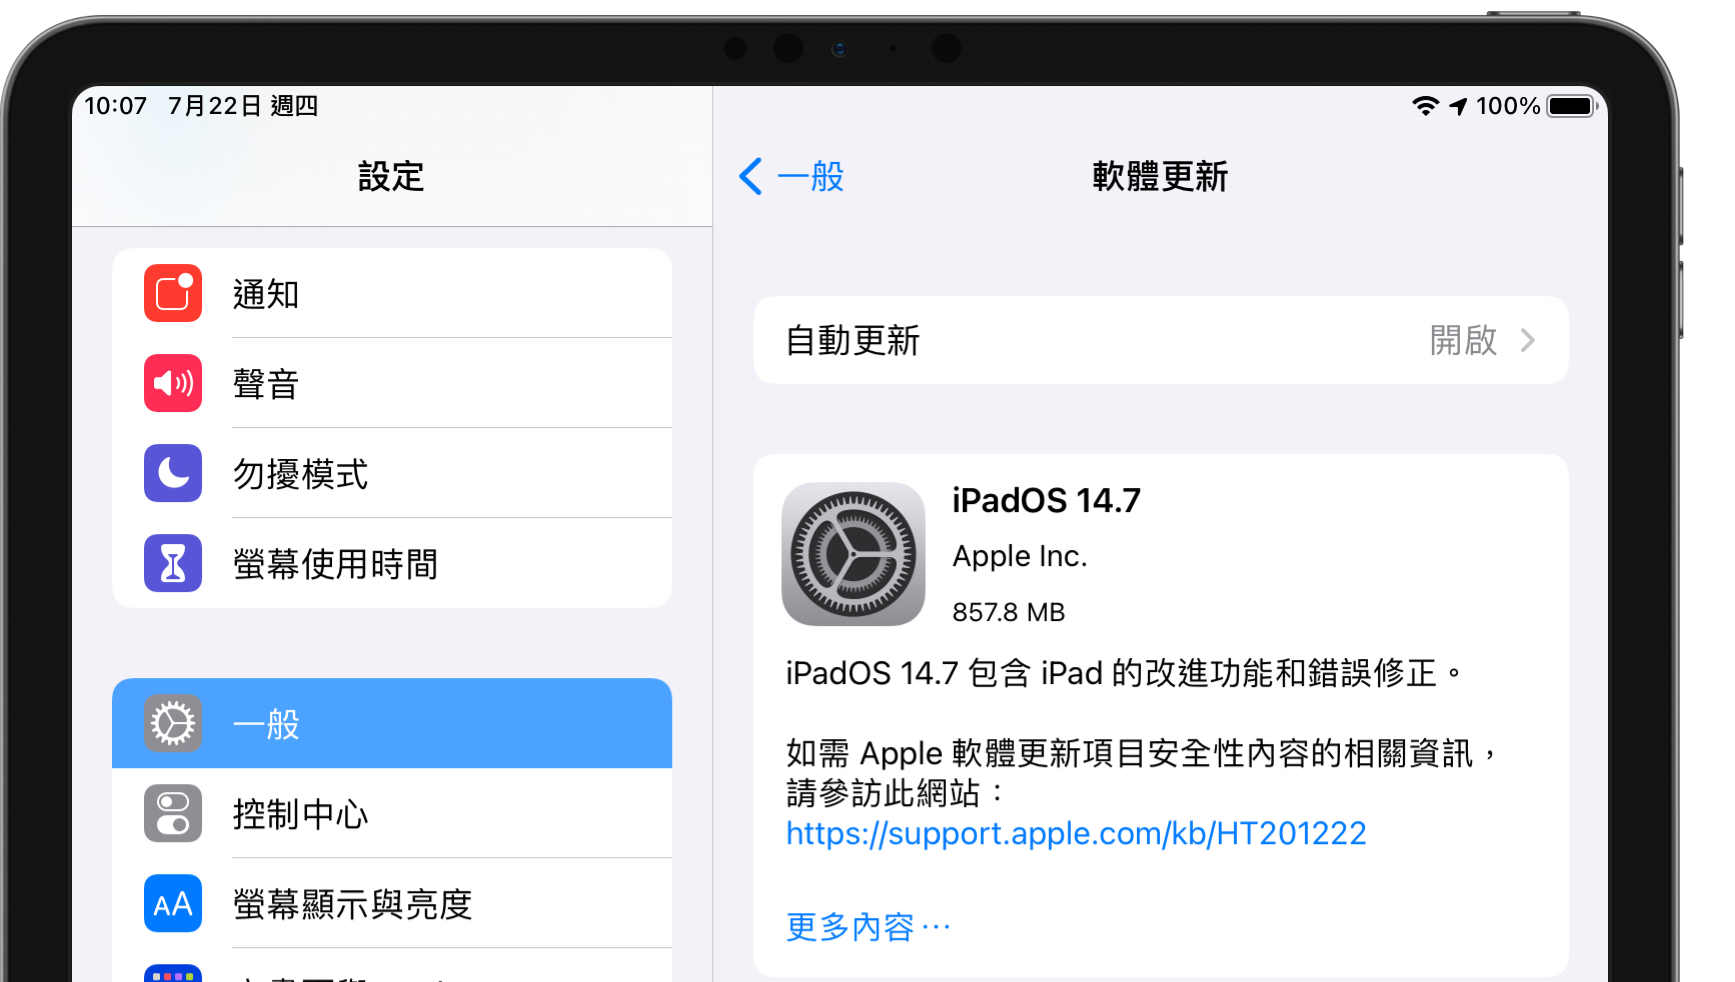 iPadOS 14.7